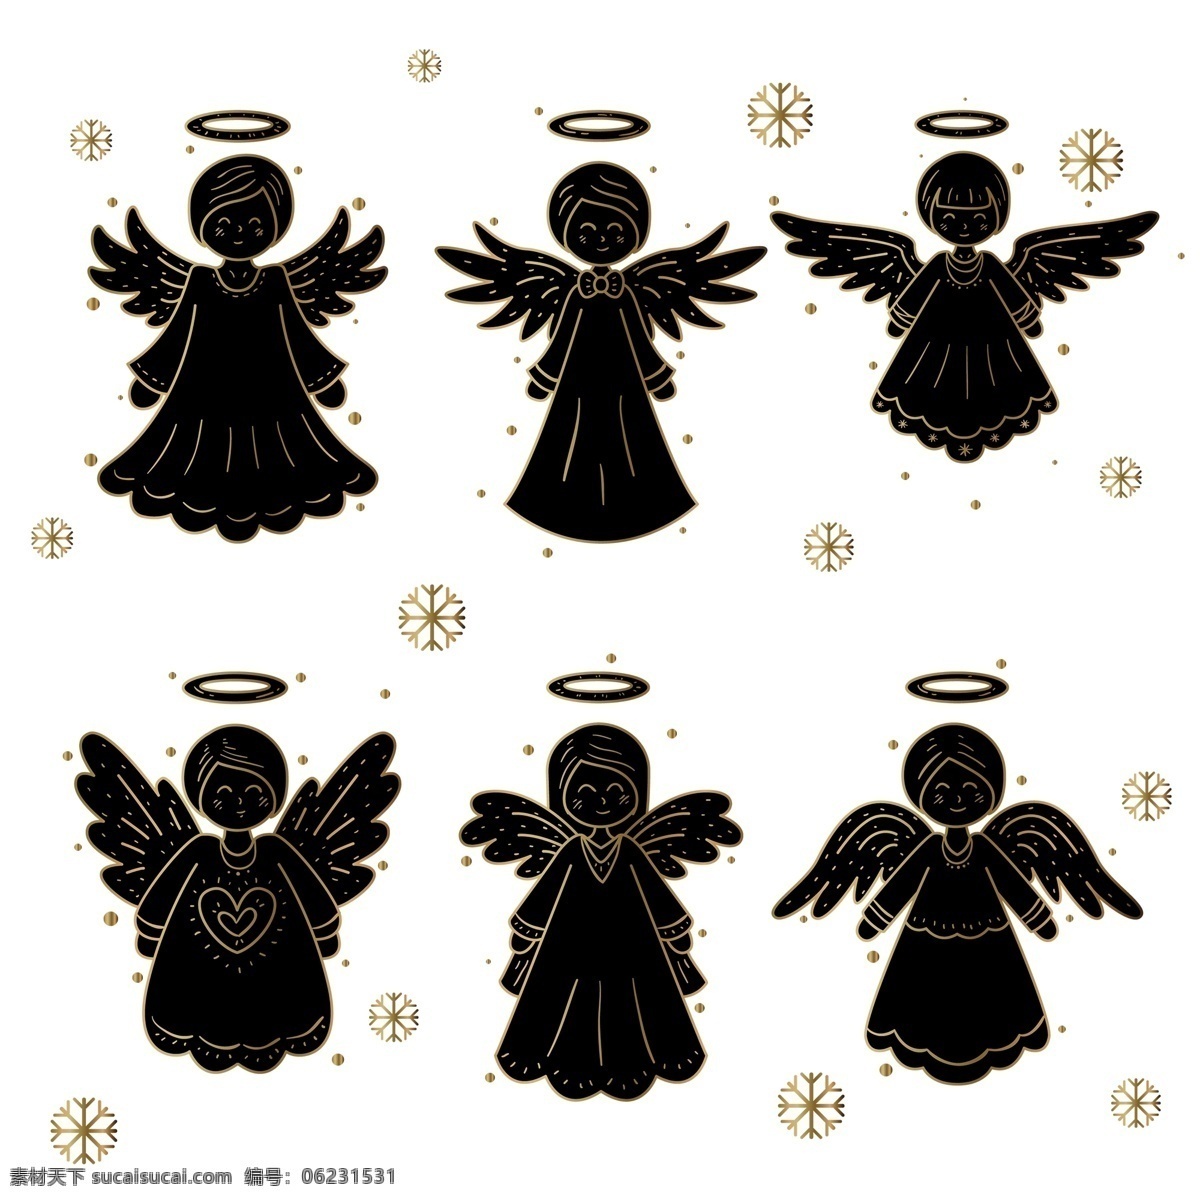 黑色 卡通 天使 免 抠 透明 黑色卡通天使 图 装饰 天使元素 天使设计图 天使海报图 天使广告图片